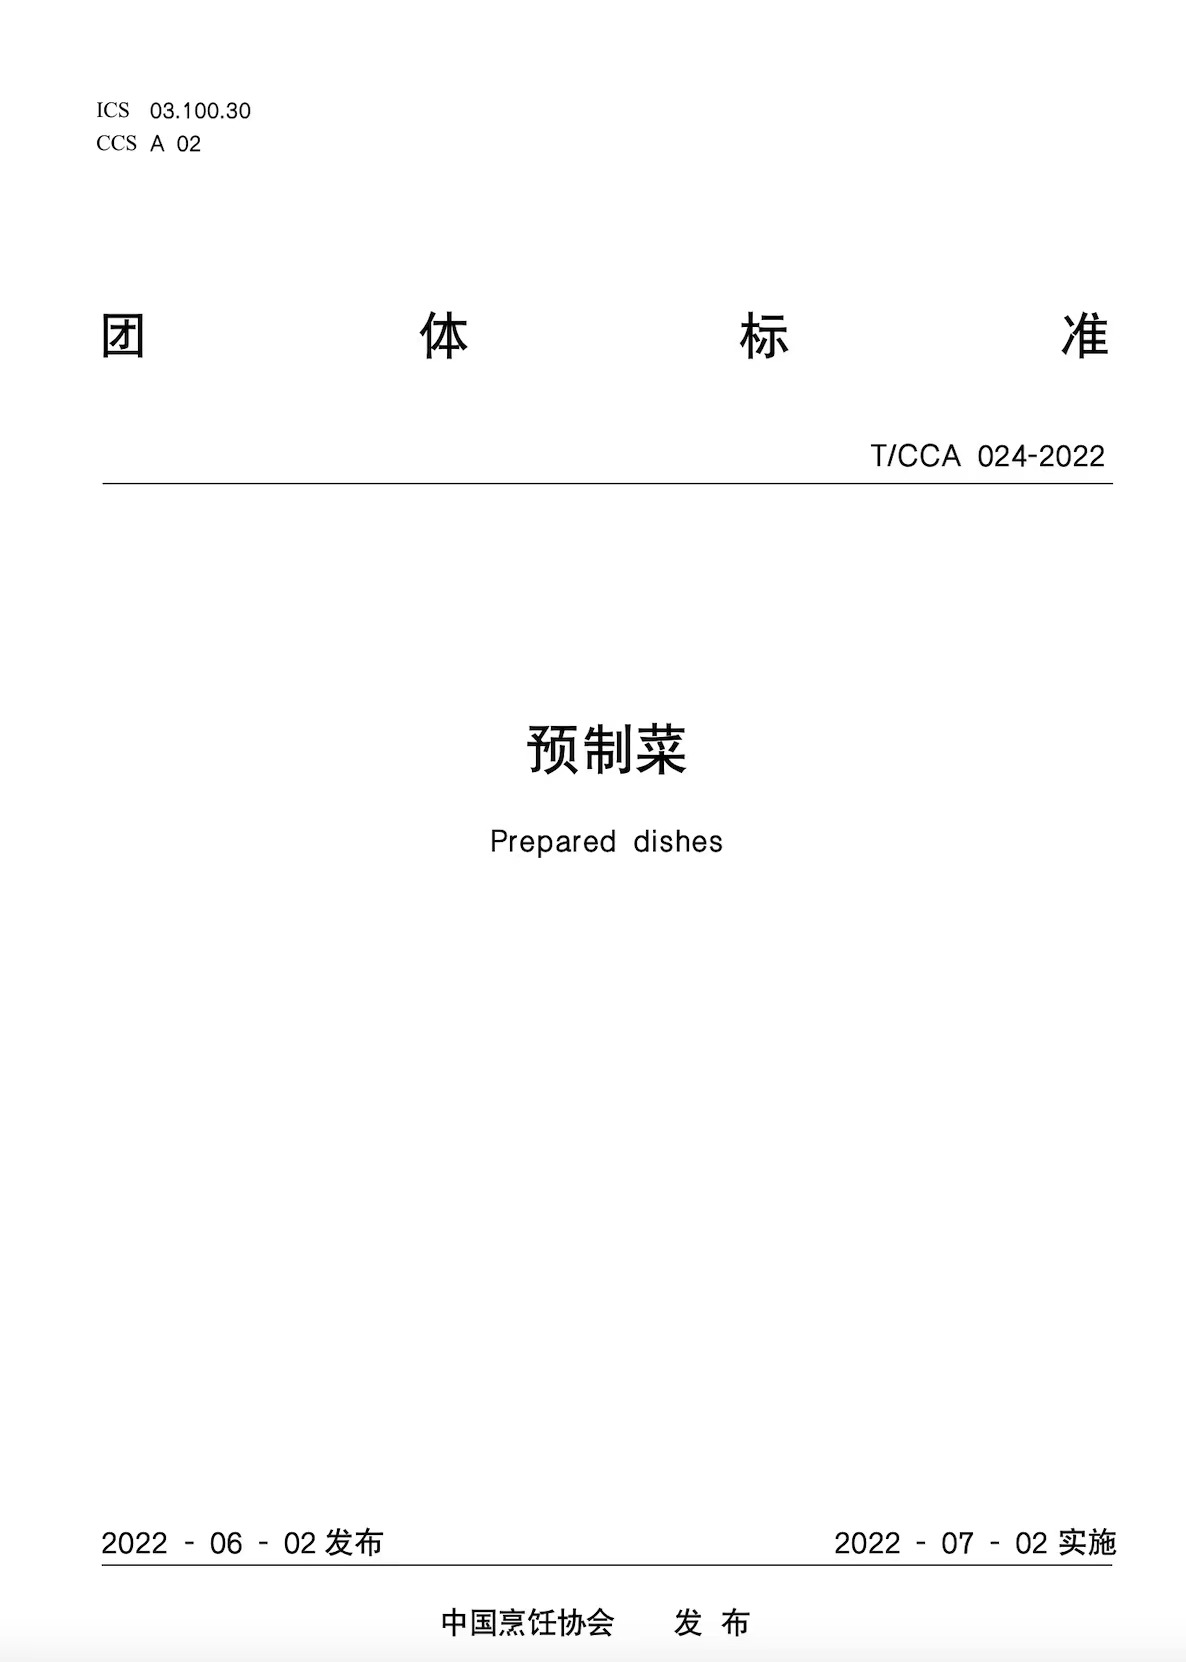 中国烹饪协会团体标准《预制菜》正式发布